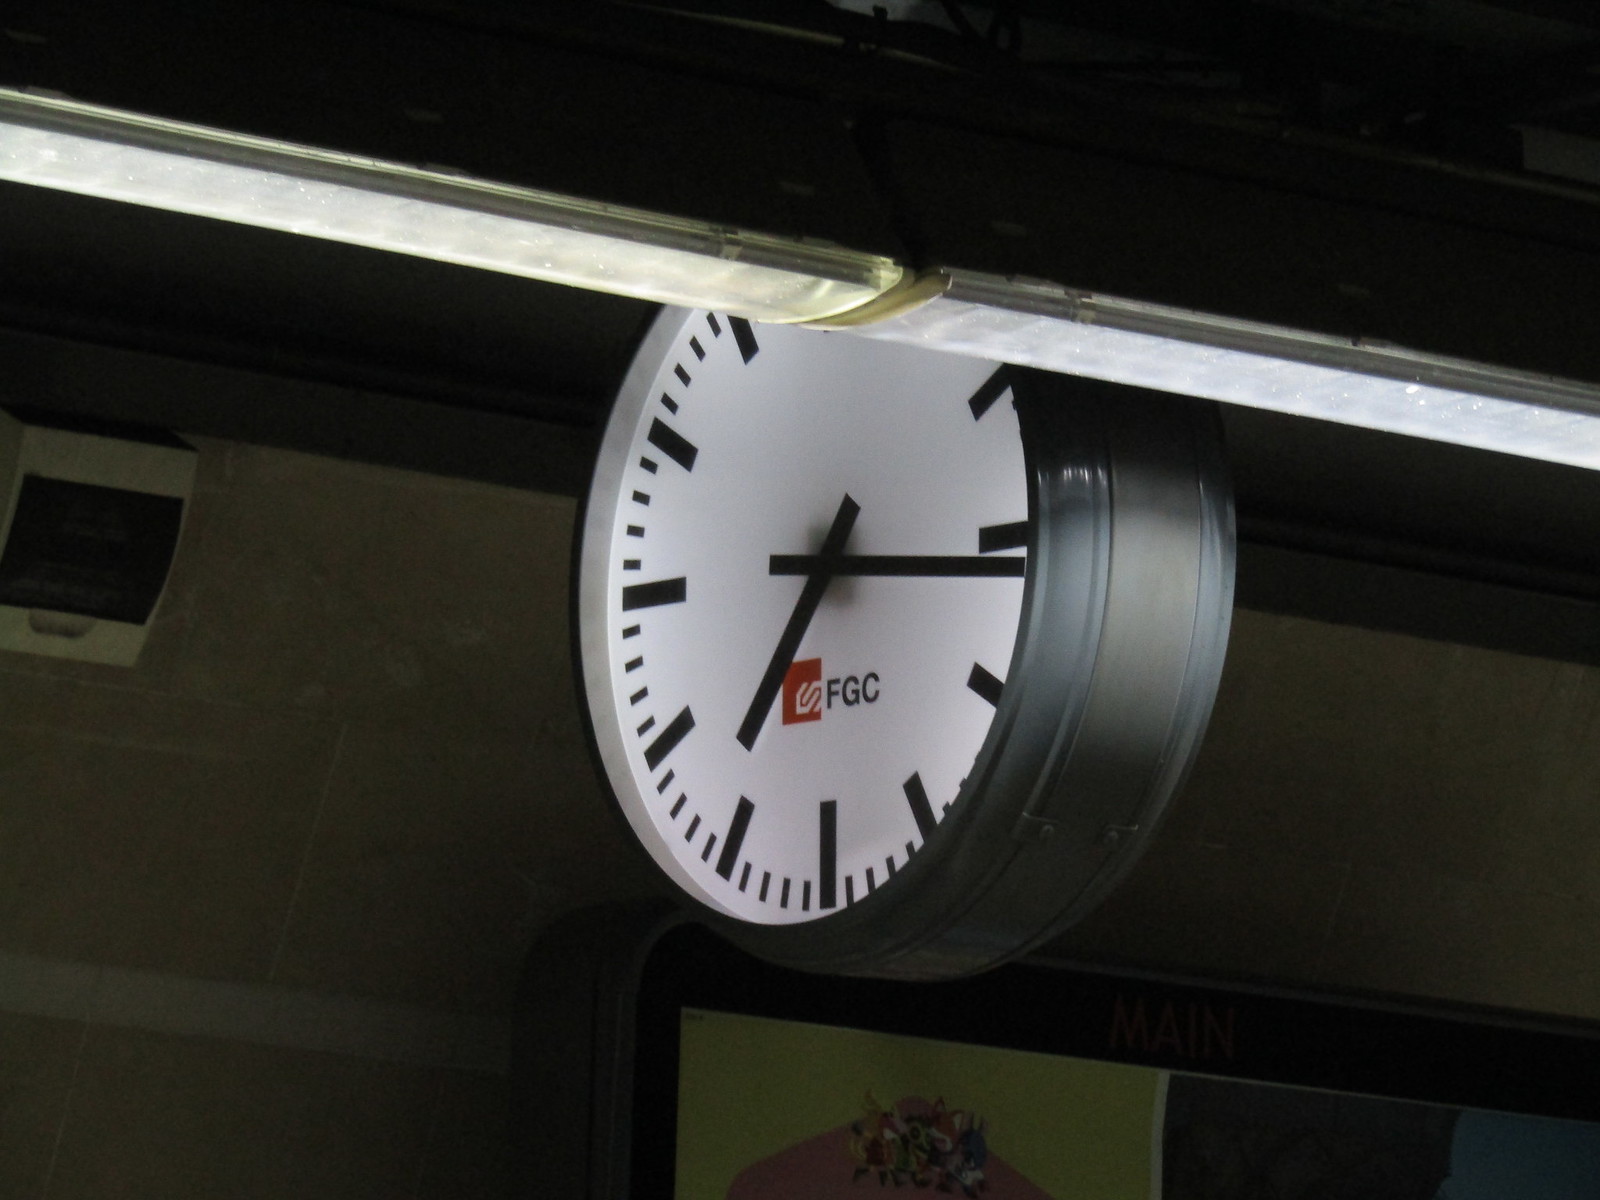 Detall del rellotge amb el logo de FGC.